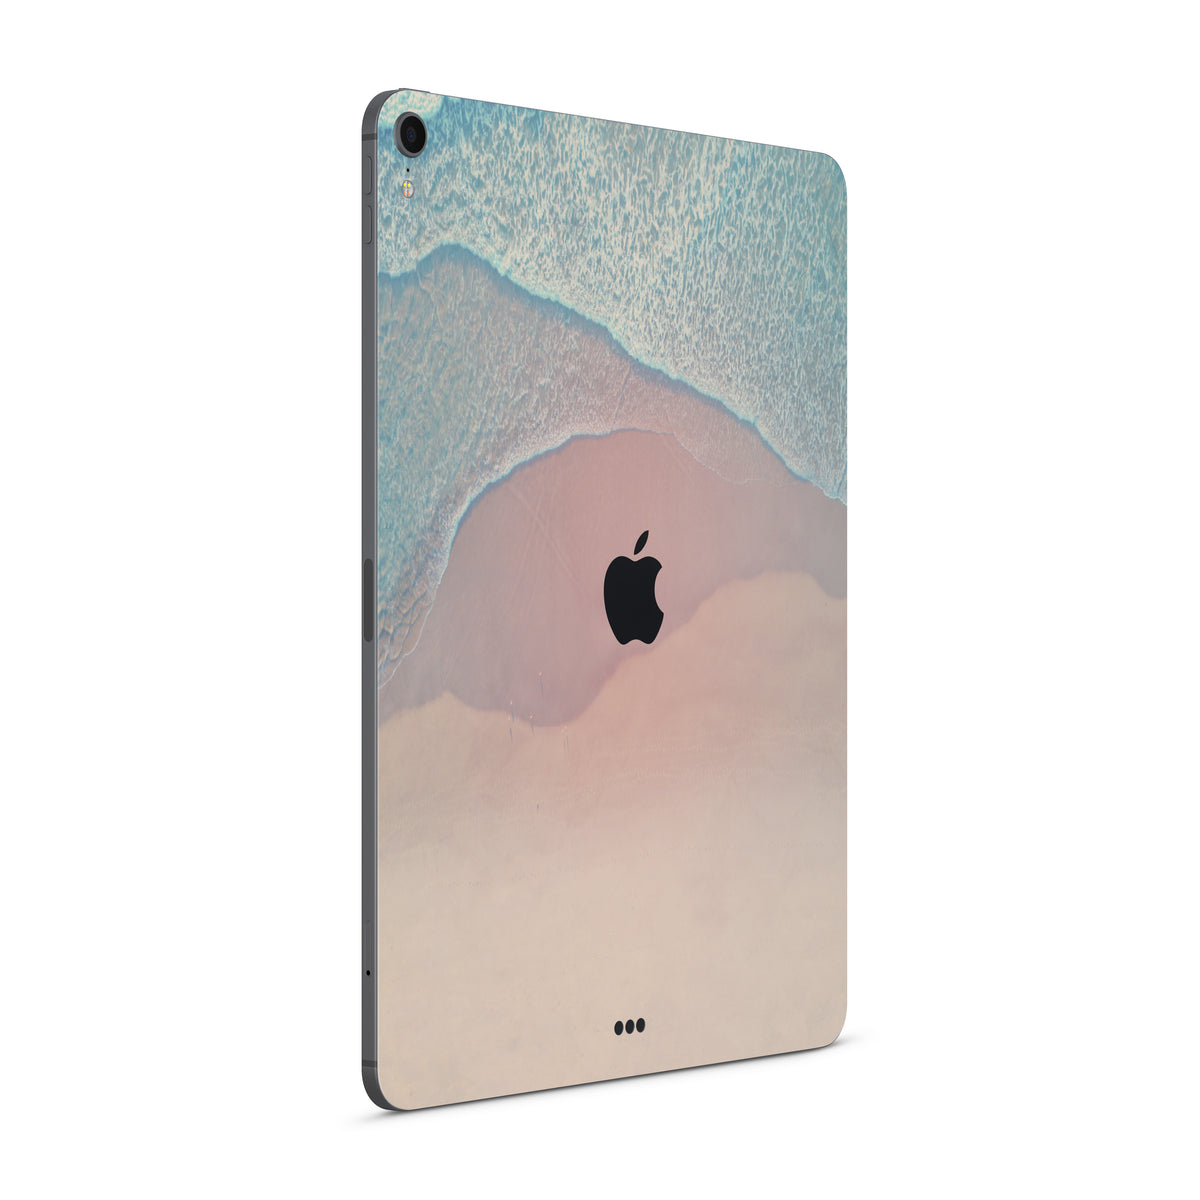 Seaside (iPad Skin)